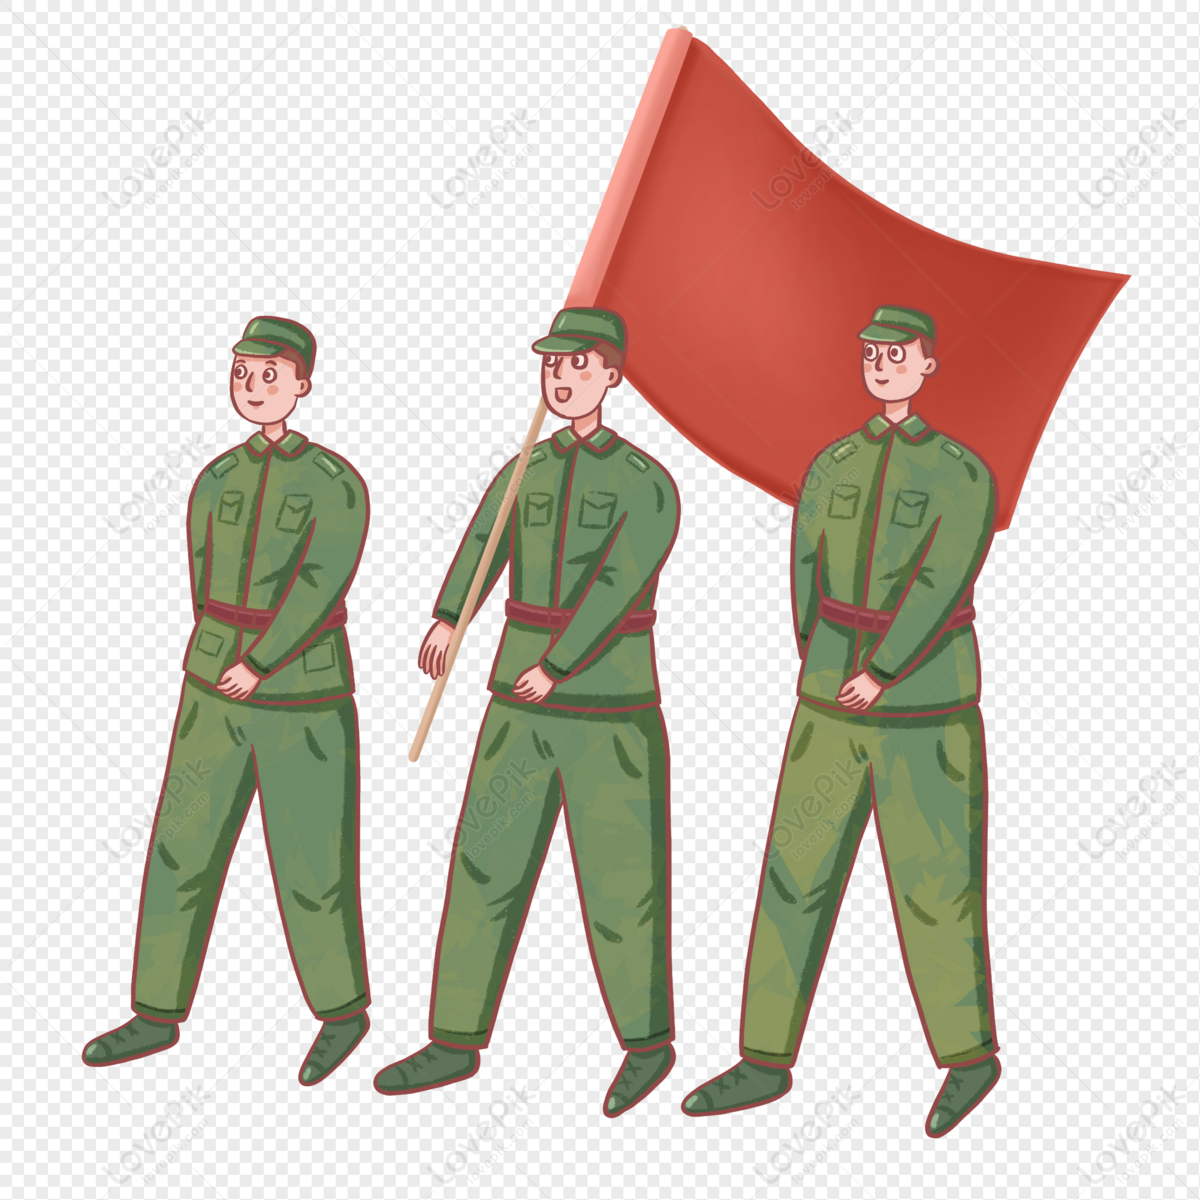 Quân Đội Quốc Kỳ: Hãy xem hình ảnh đầy cảm hứng về Quân đội và Quốc kỳ của Việt Nam. Bạn sẽ được tưởng thưởng cảm giác tự hào và xúc động khi nhìn thấy vẻ đẹp của cờ đỏ sao vàng.